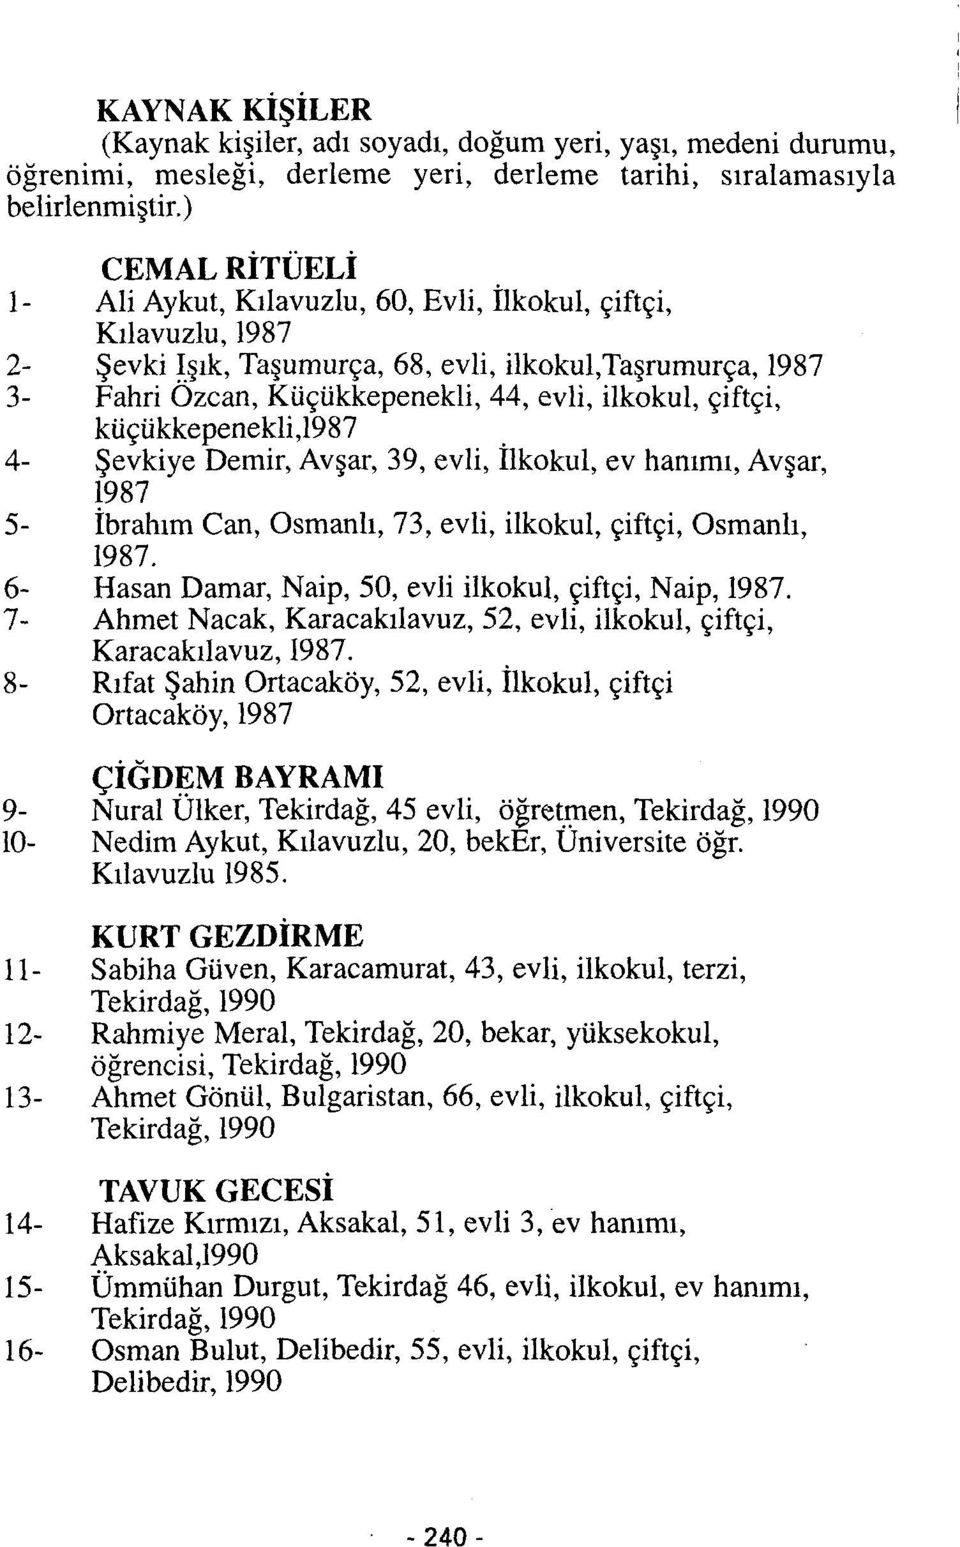 çiftçi, küçükkepenekli,l987. 4- Şevkiye Demir, Avşar, 39, evli, Ilkokul, ev hanımı, Avşar, 1987 5- İbrahım Can, Osmanlı, 73, evli, ilkokul, çiftçi, Osmanlı, 1987.